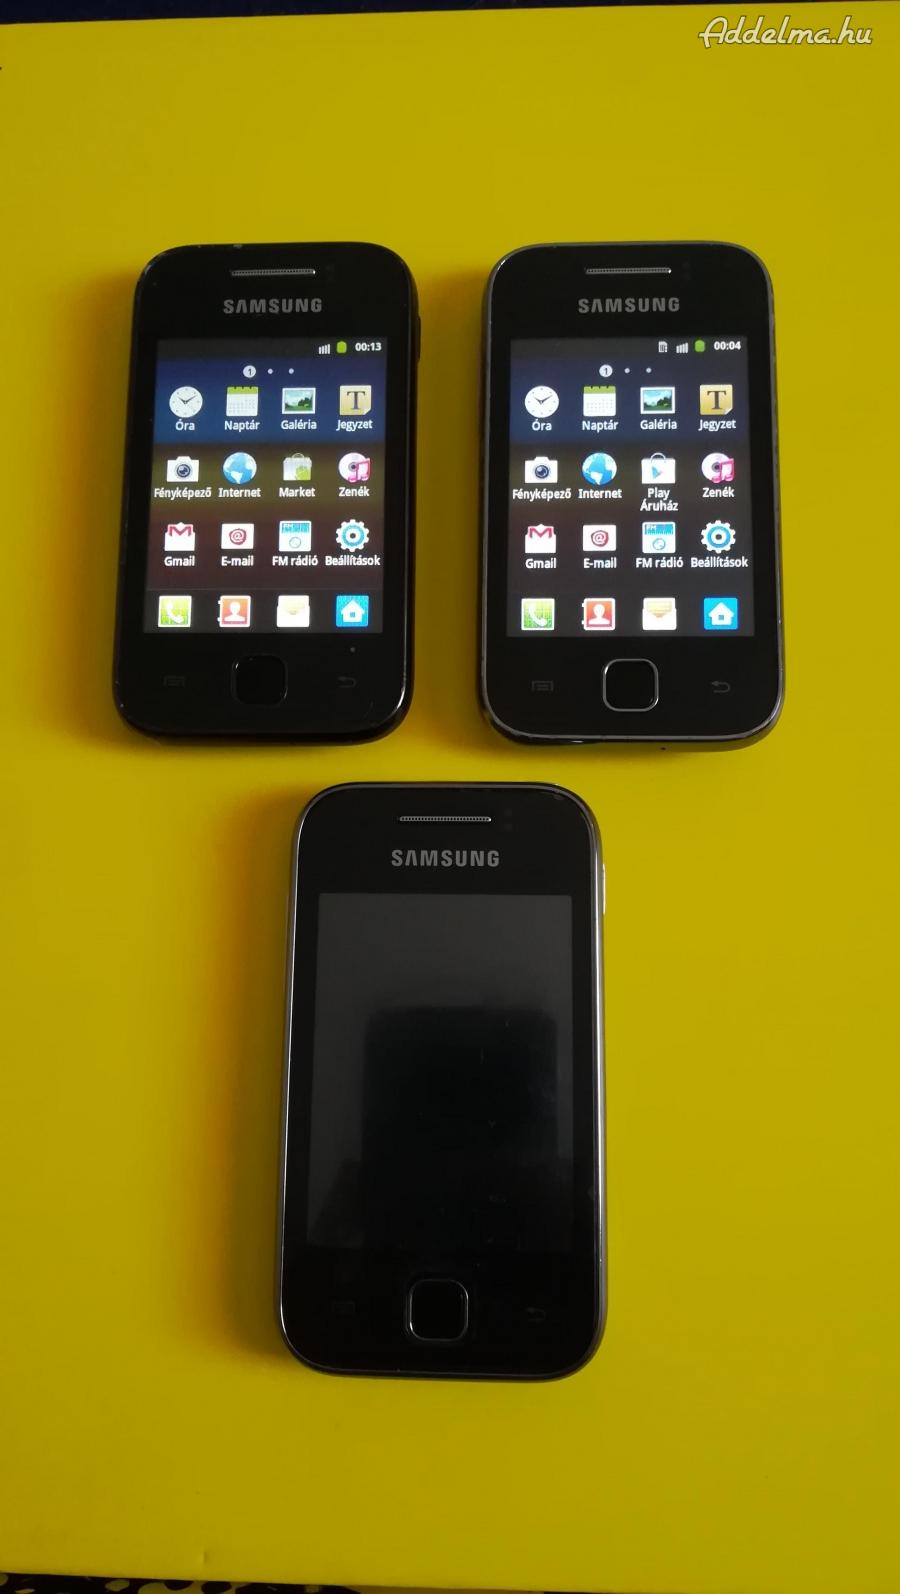 Samsung s5360 mobil 1. letiltott 2. simet nem olvas 3, c